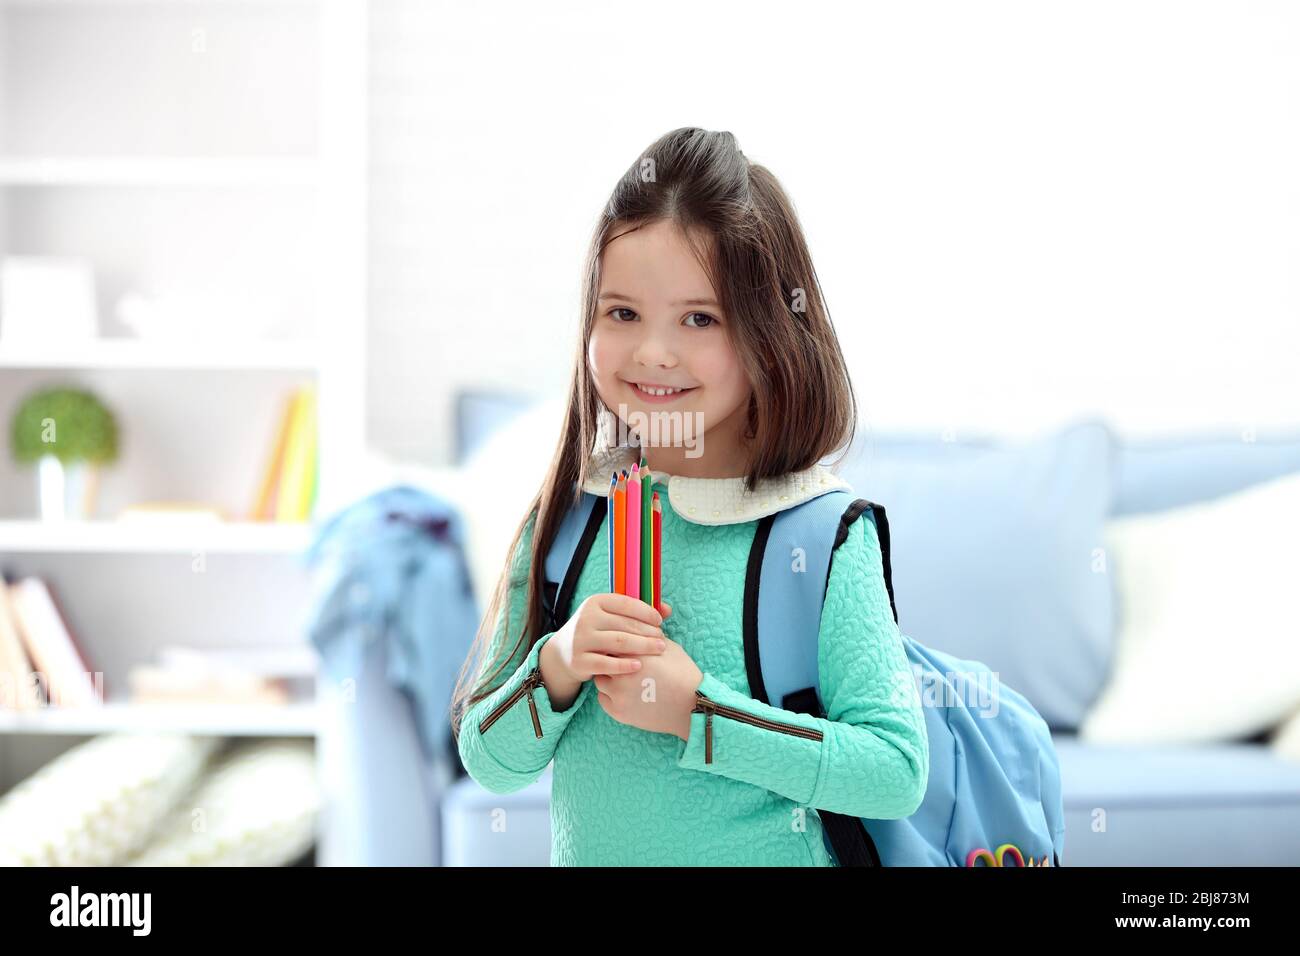 Petite fille avec sac à dos bleu tenant des crayons de couleur dans le salon Banque D'Images